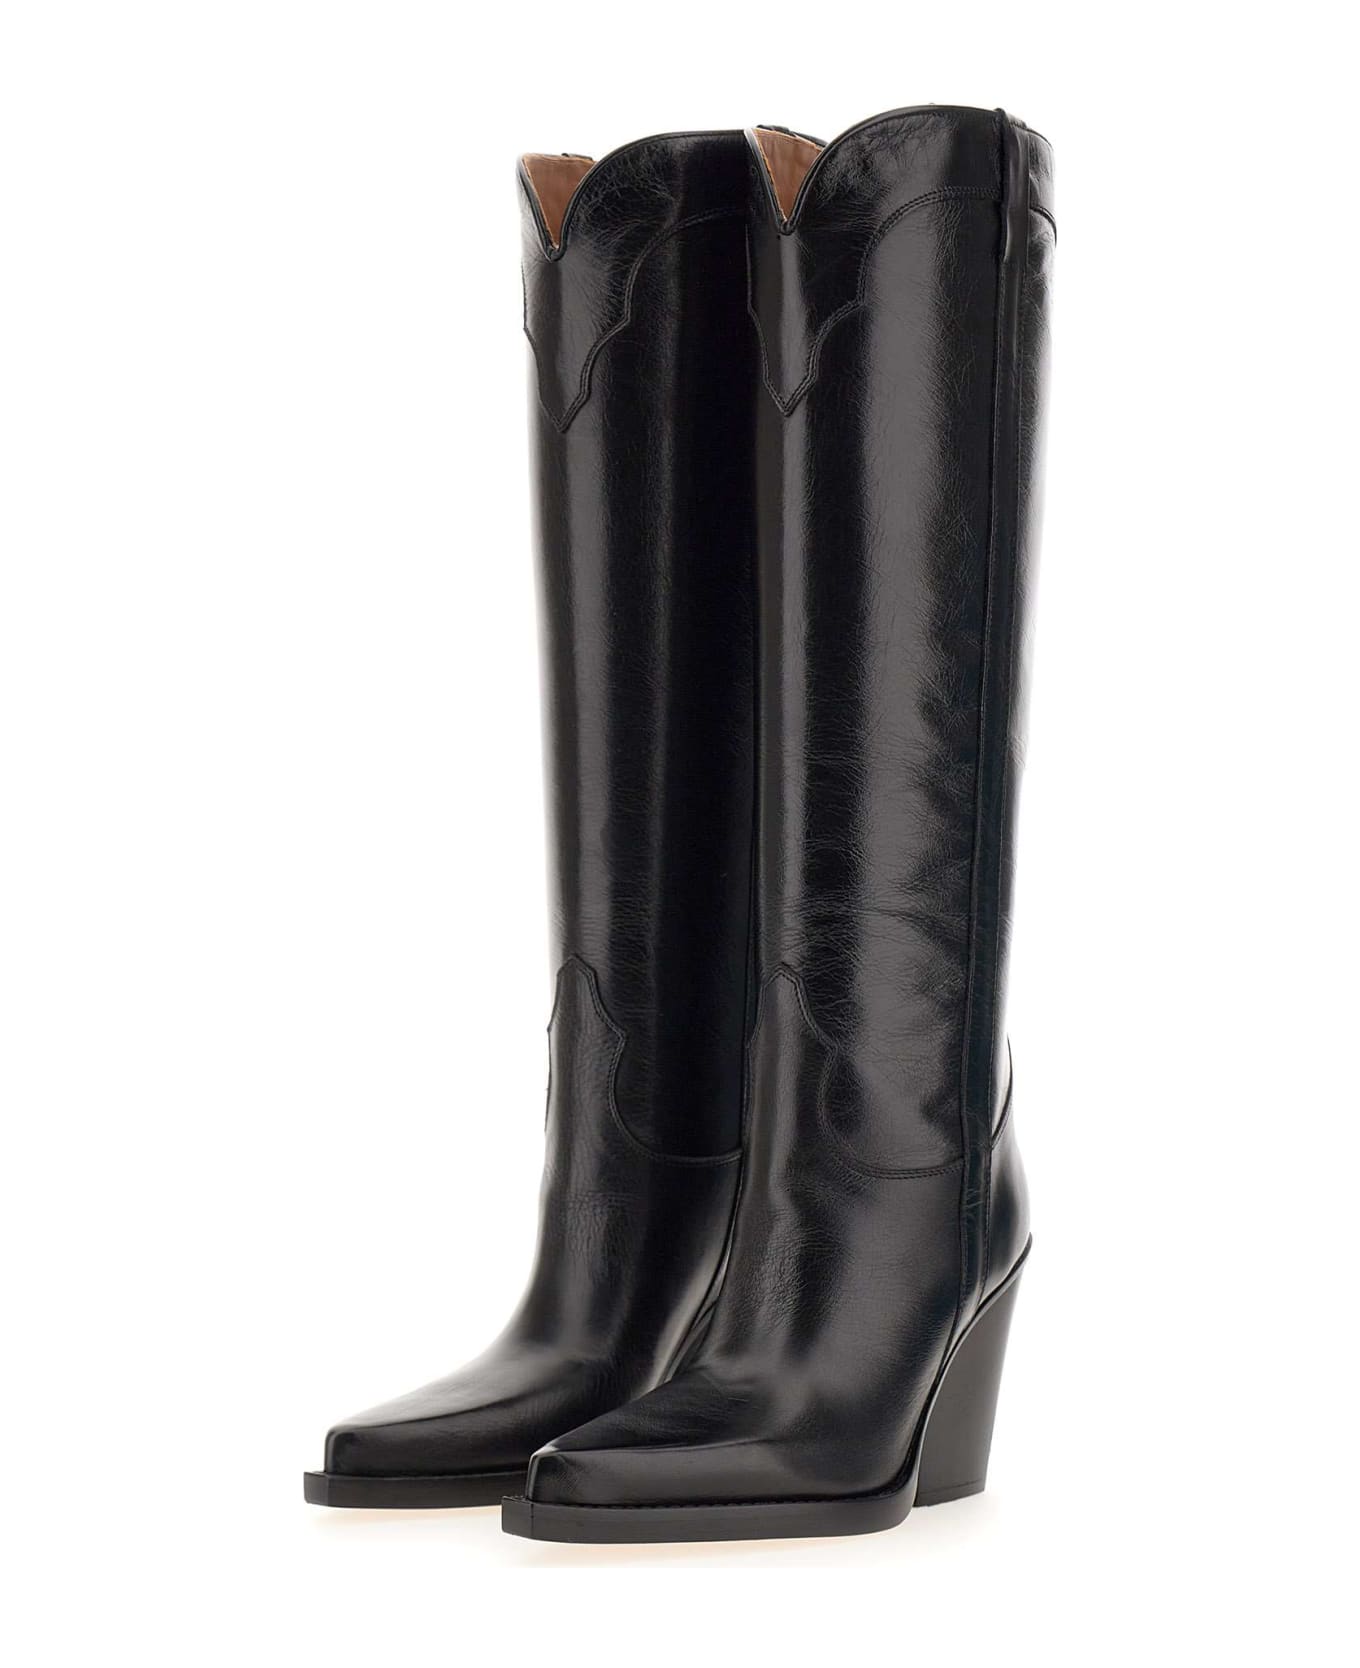 Paris Texas 'el Dorado Boots' Leather Boots - Nero